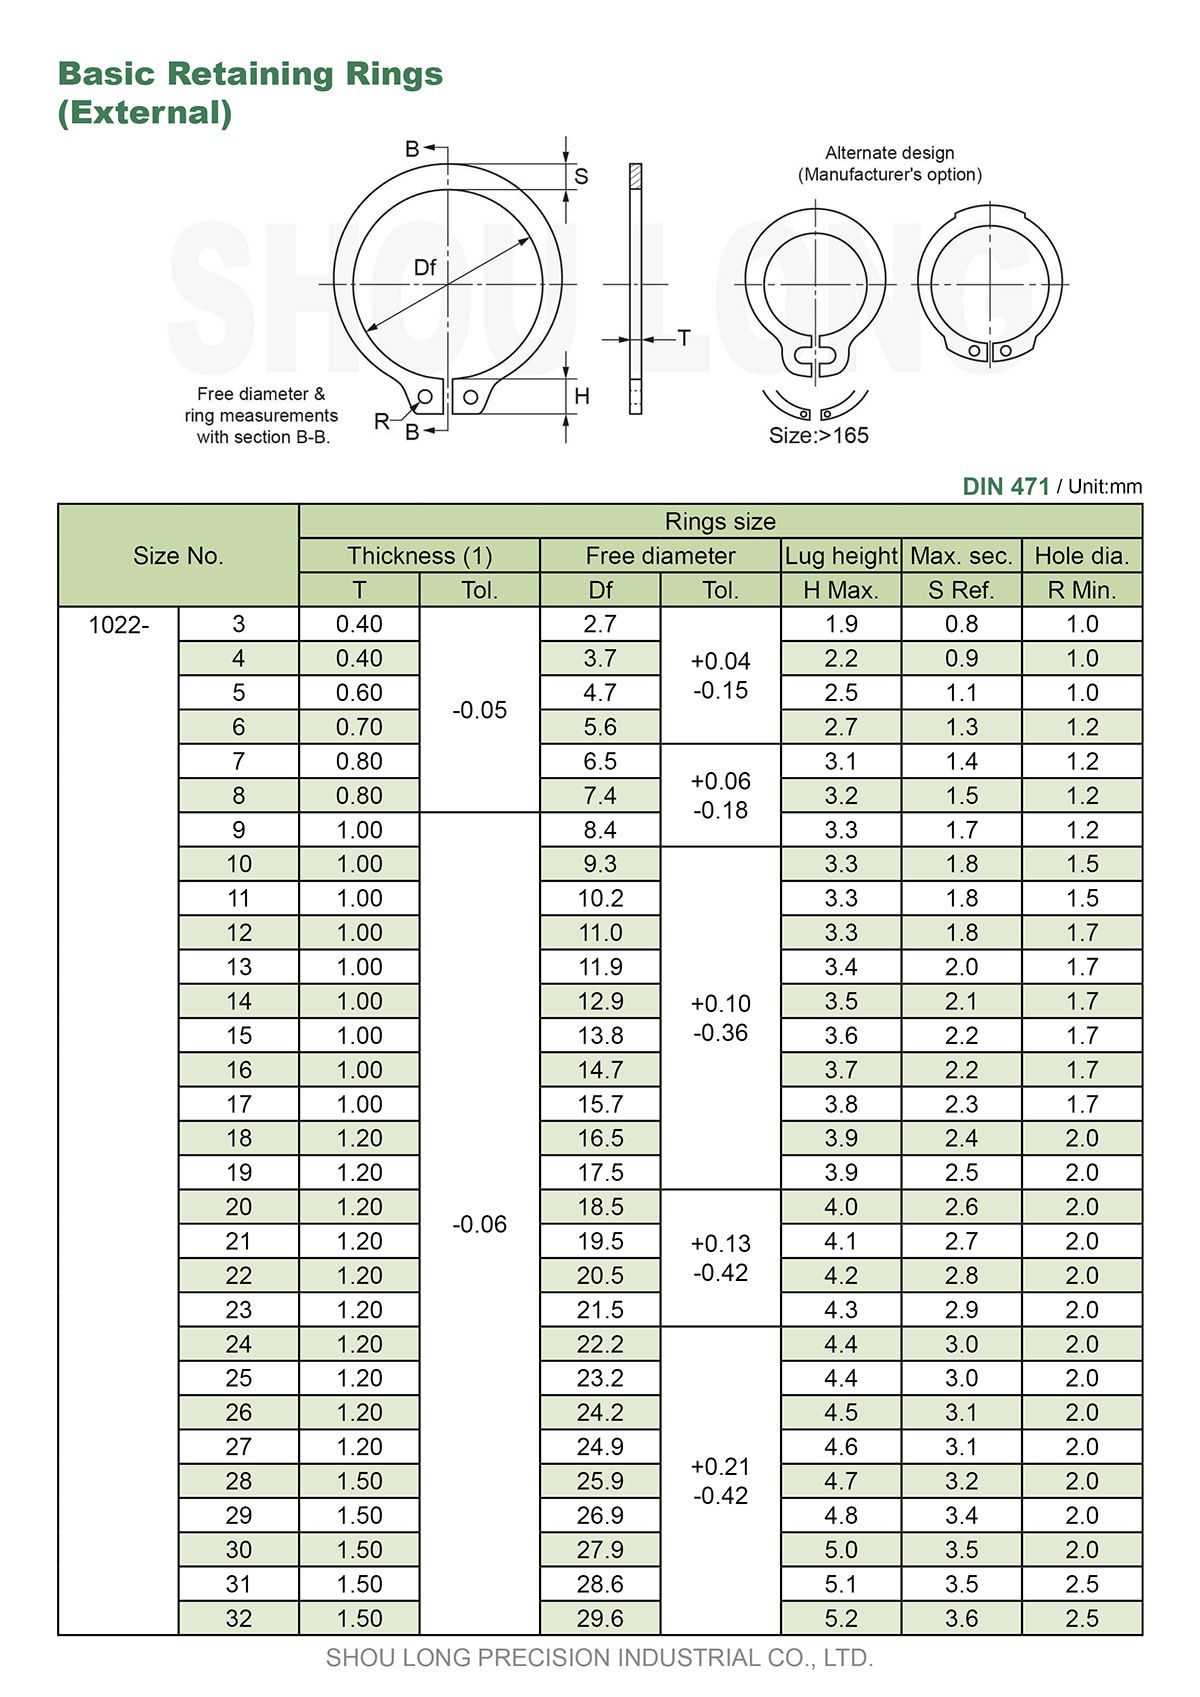 Especificação de Anéis de Retenção Básicos Métricos para Eixo DIN471-1